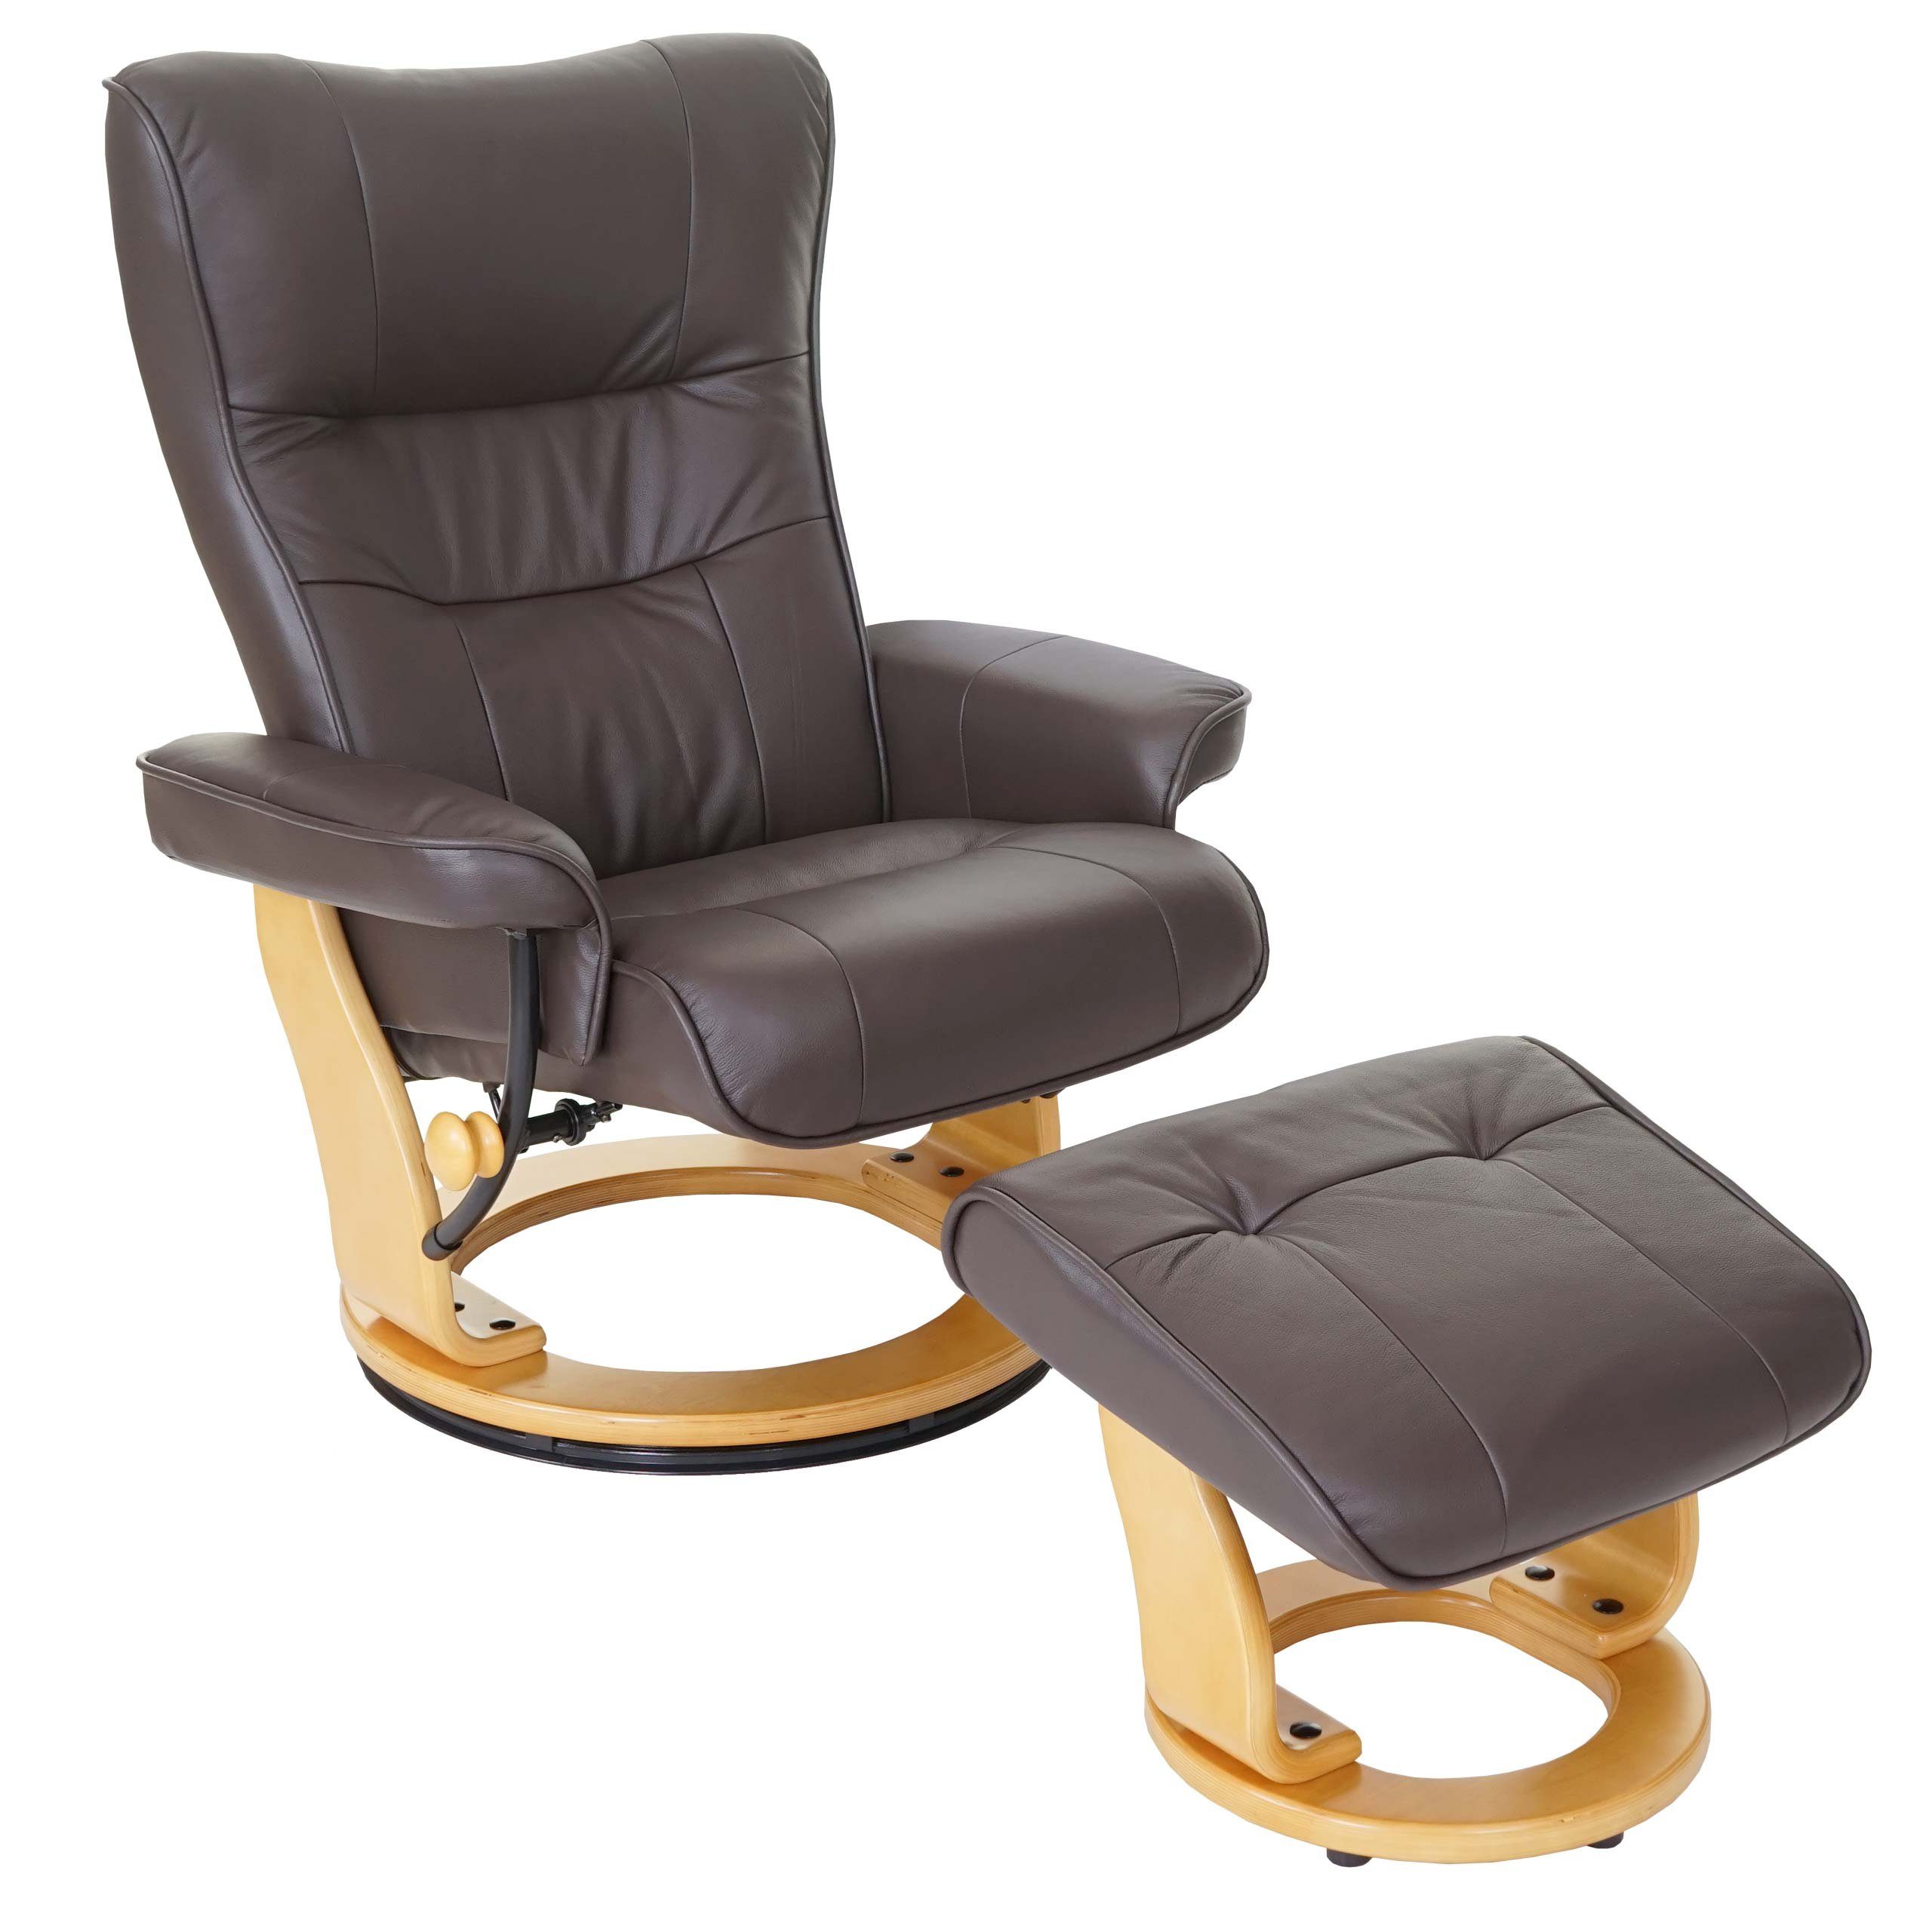 MCA furniture Relaxsessel Edmonton, Dicke Polsterung, Inkl. gepolstertem Fußhocker, Markenware von MCA braun, naturbraun